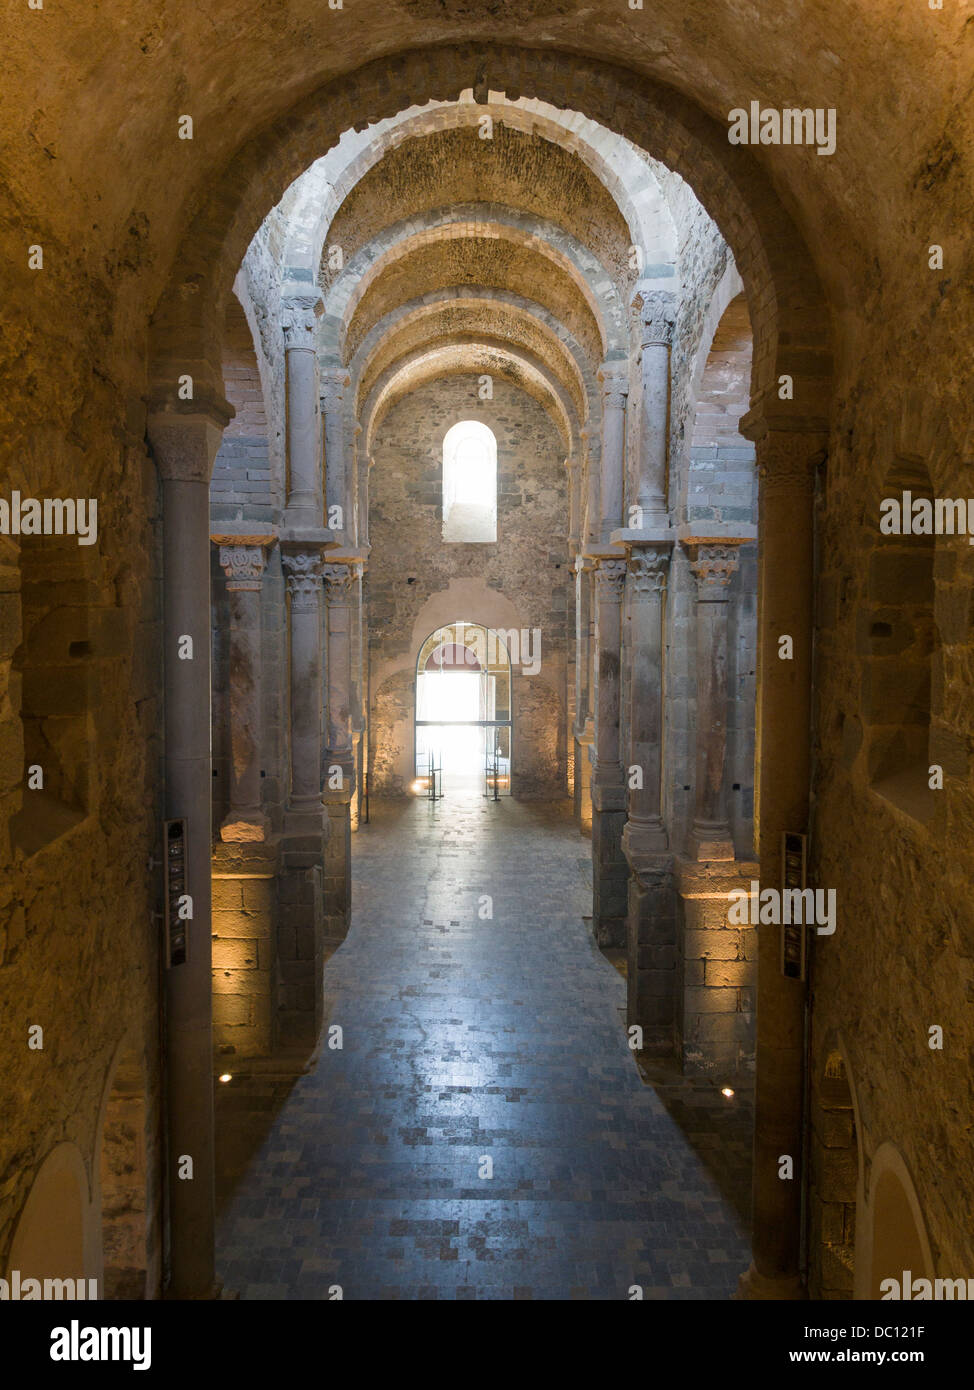 Innenraum des Klosters Saint Pere de Rodes. Eine lange gewölbte Gang in das Innere des Klosters massive. Stockfoto